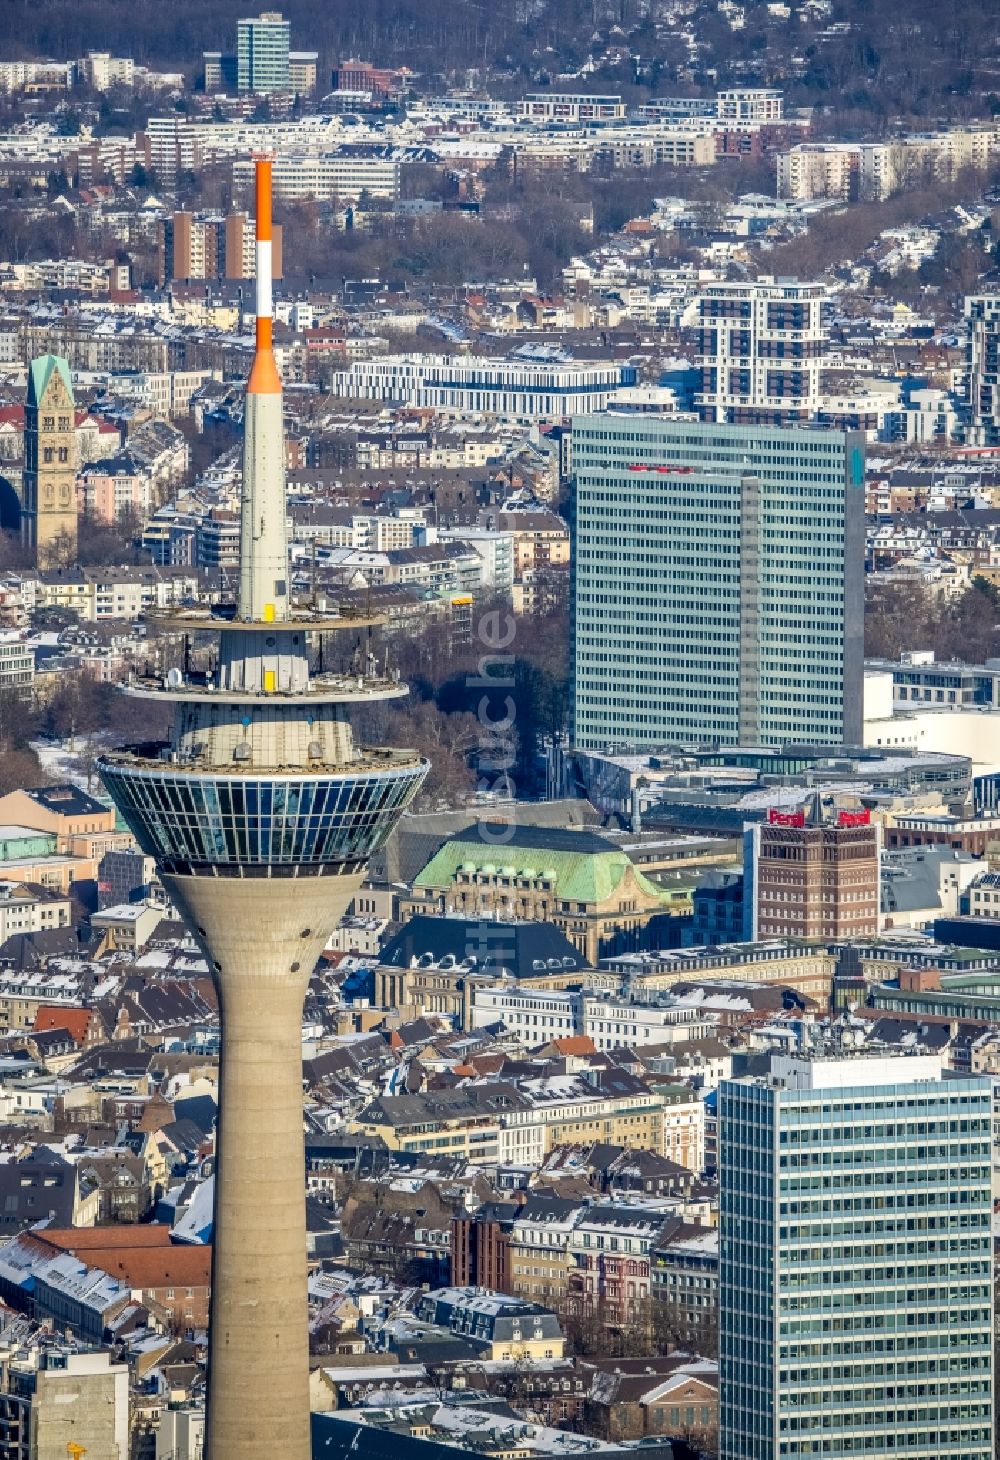 Düsseldorf von oben - Fernsehturm Rheinturm in Düsseldorf im Bundesland Nordrhein-Westfalen